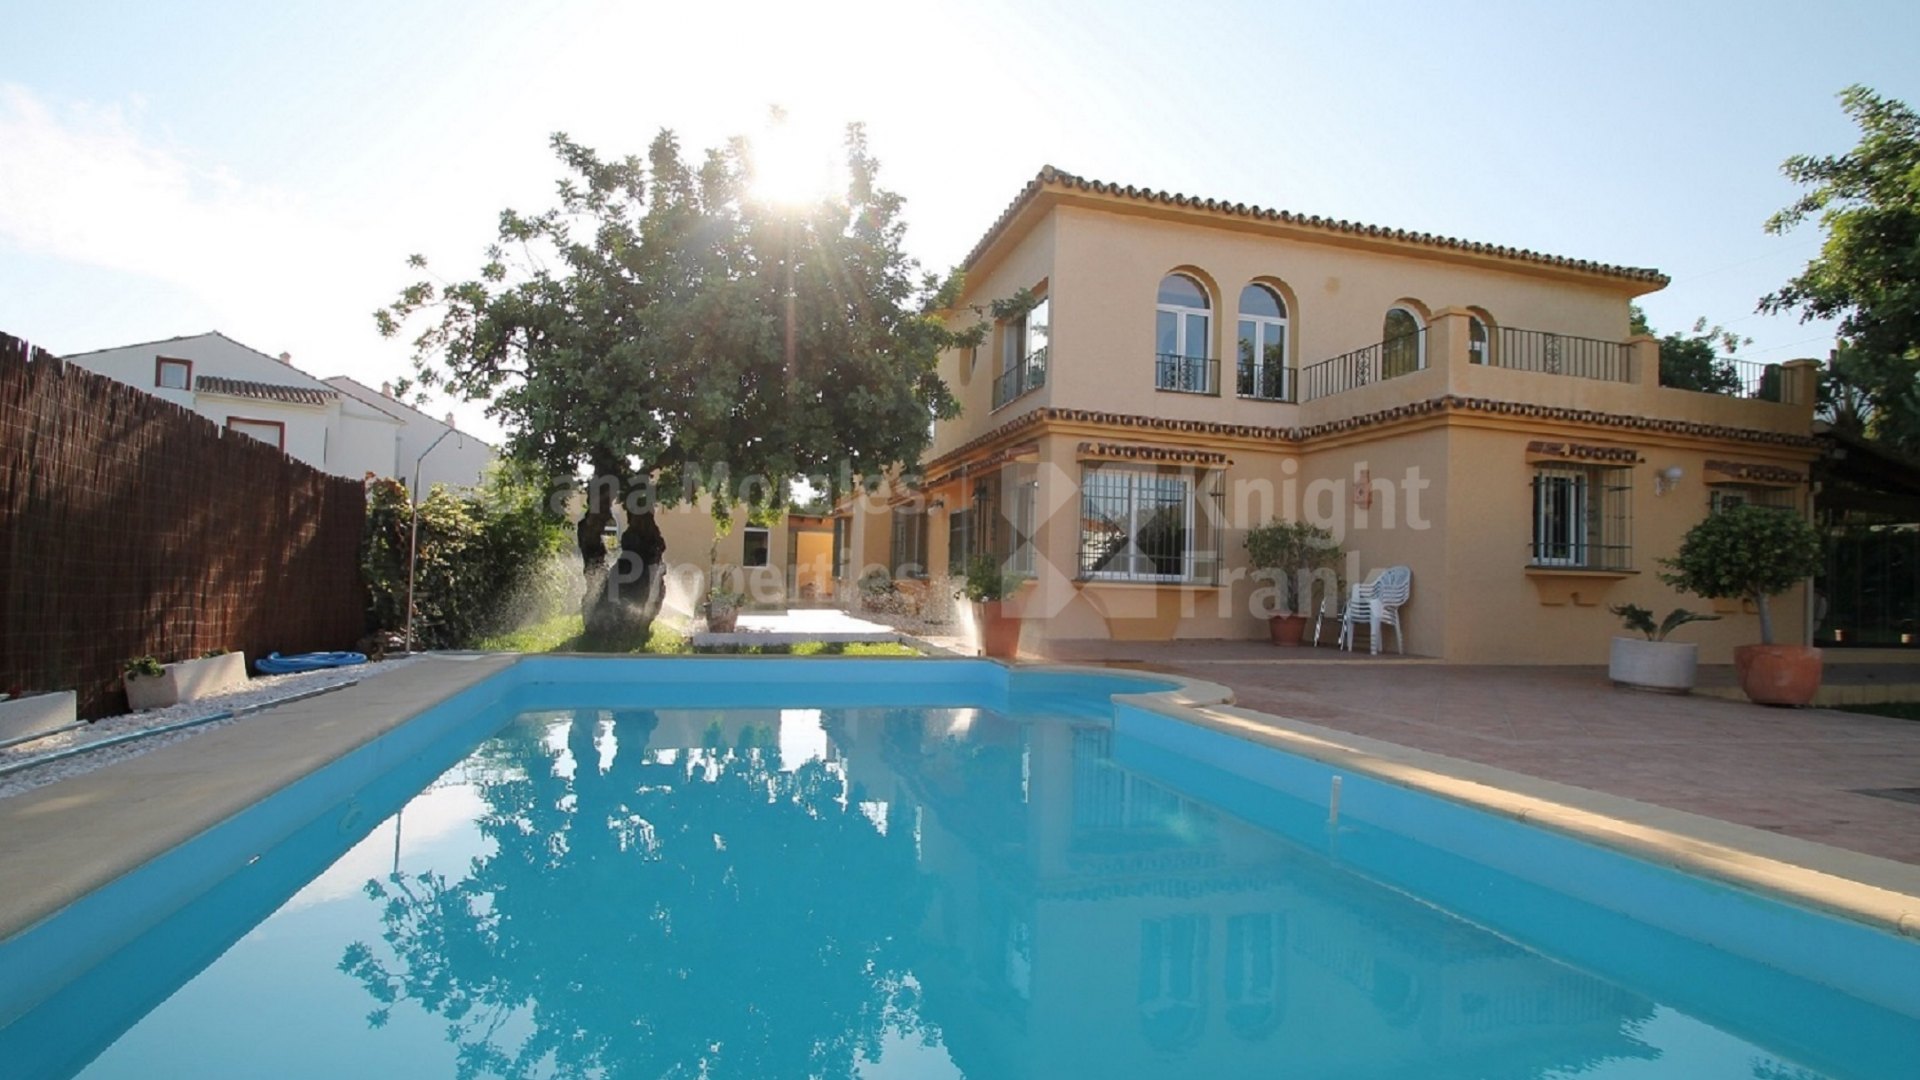 Valdeolletas, Villa in Marbella for sale